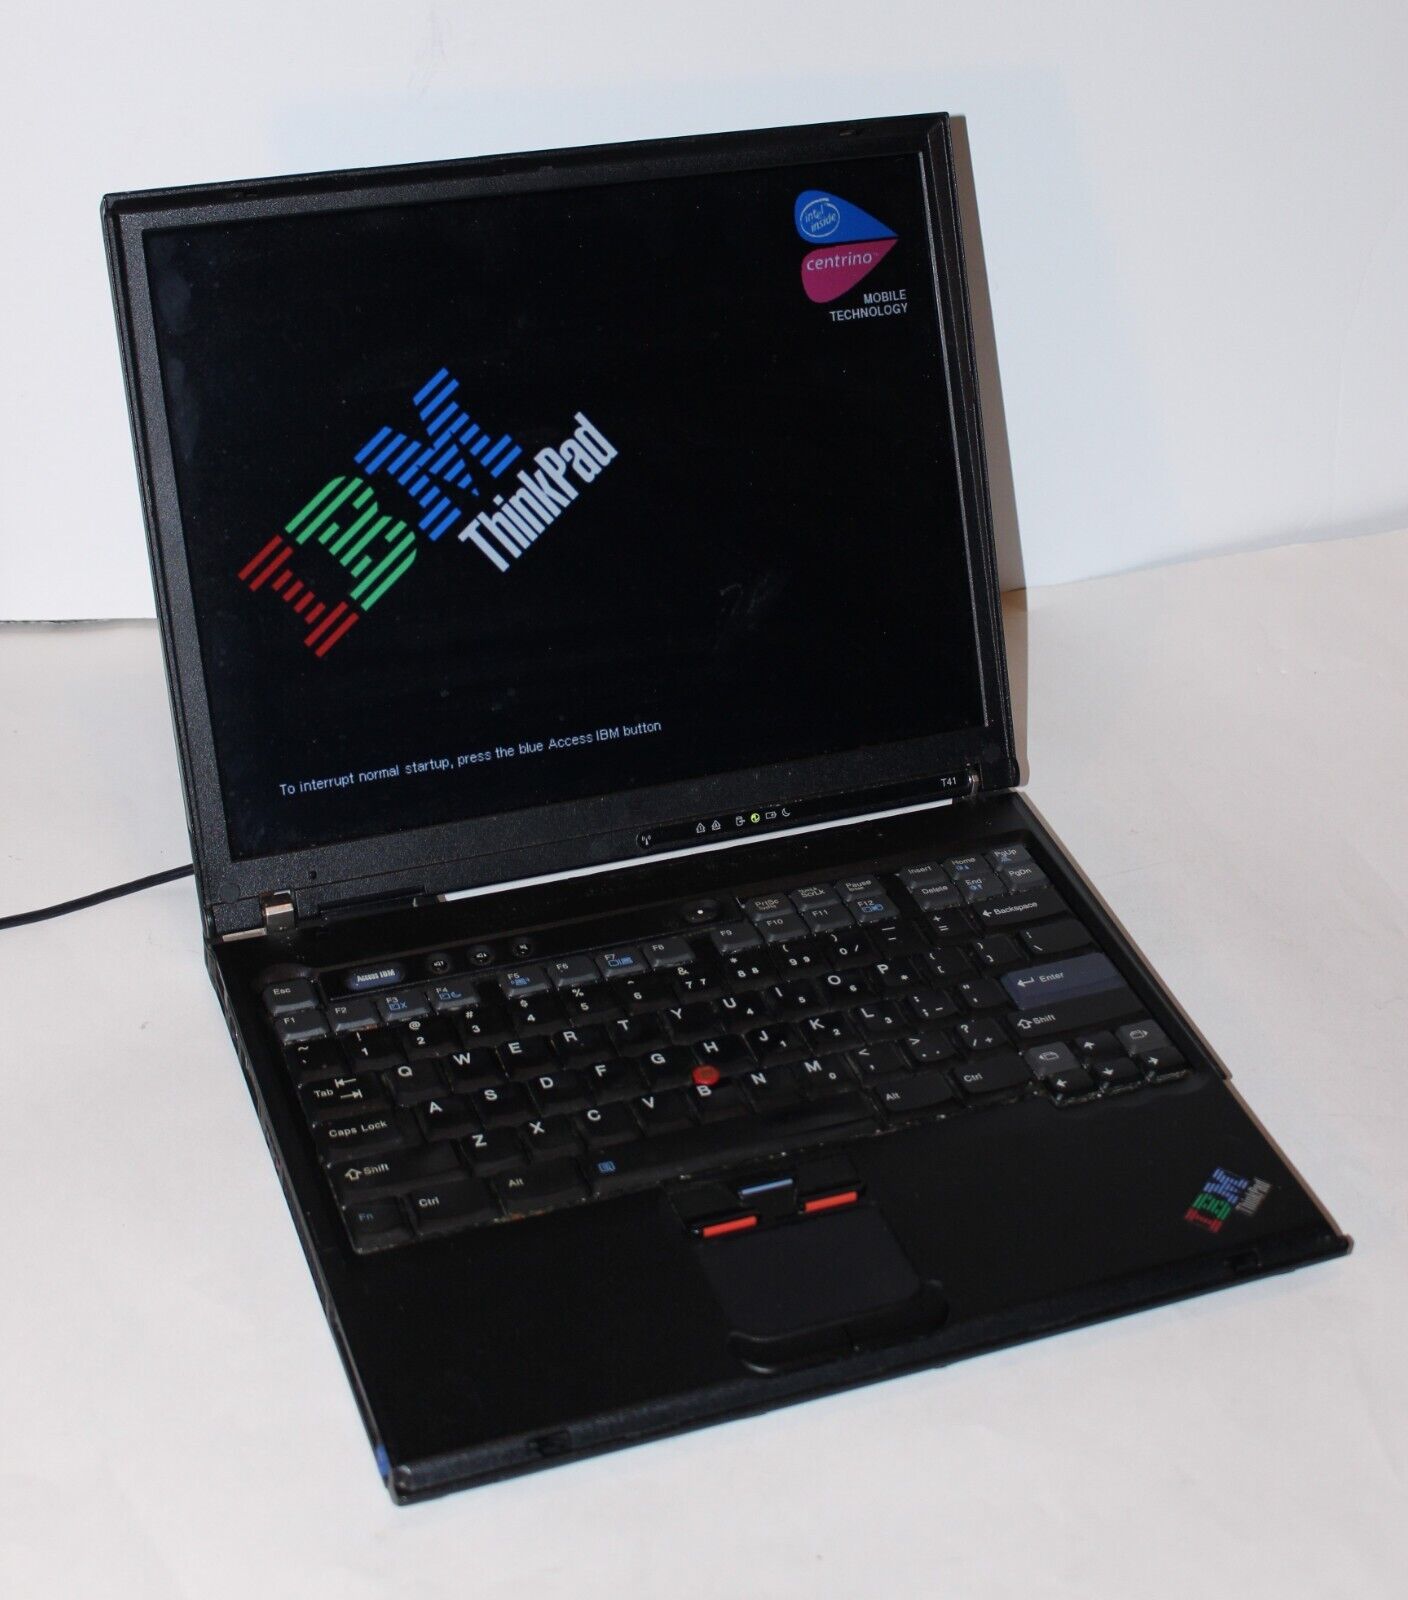 IBM ThinkPad T41 Pentium M  1.6GHz 512MB Ram 14.1